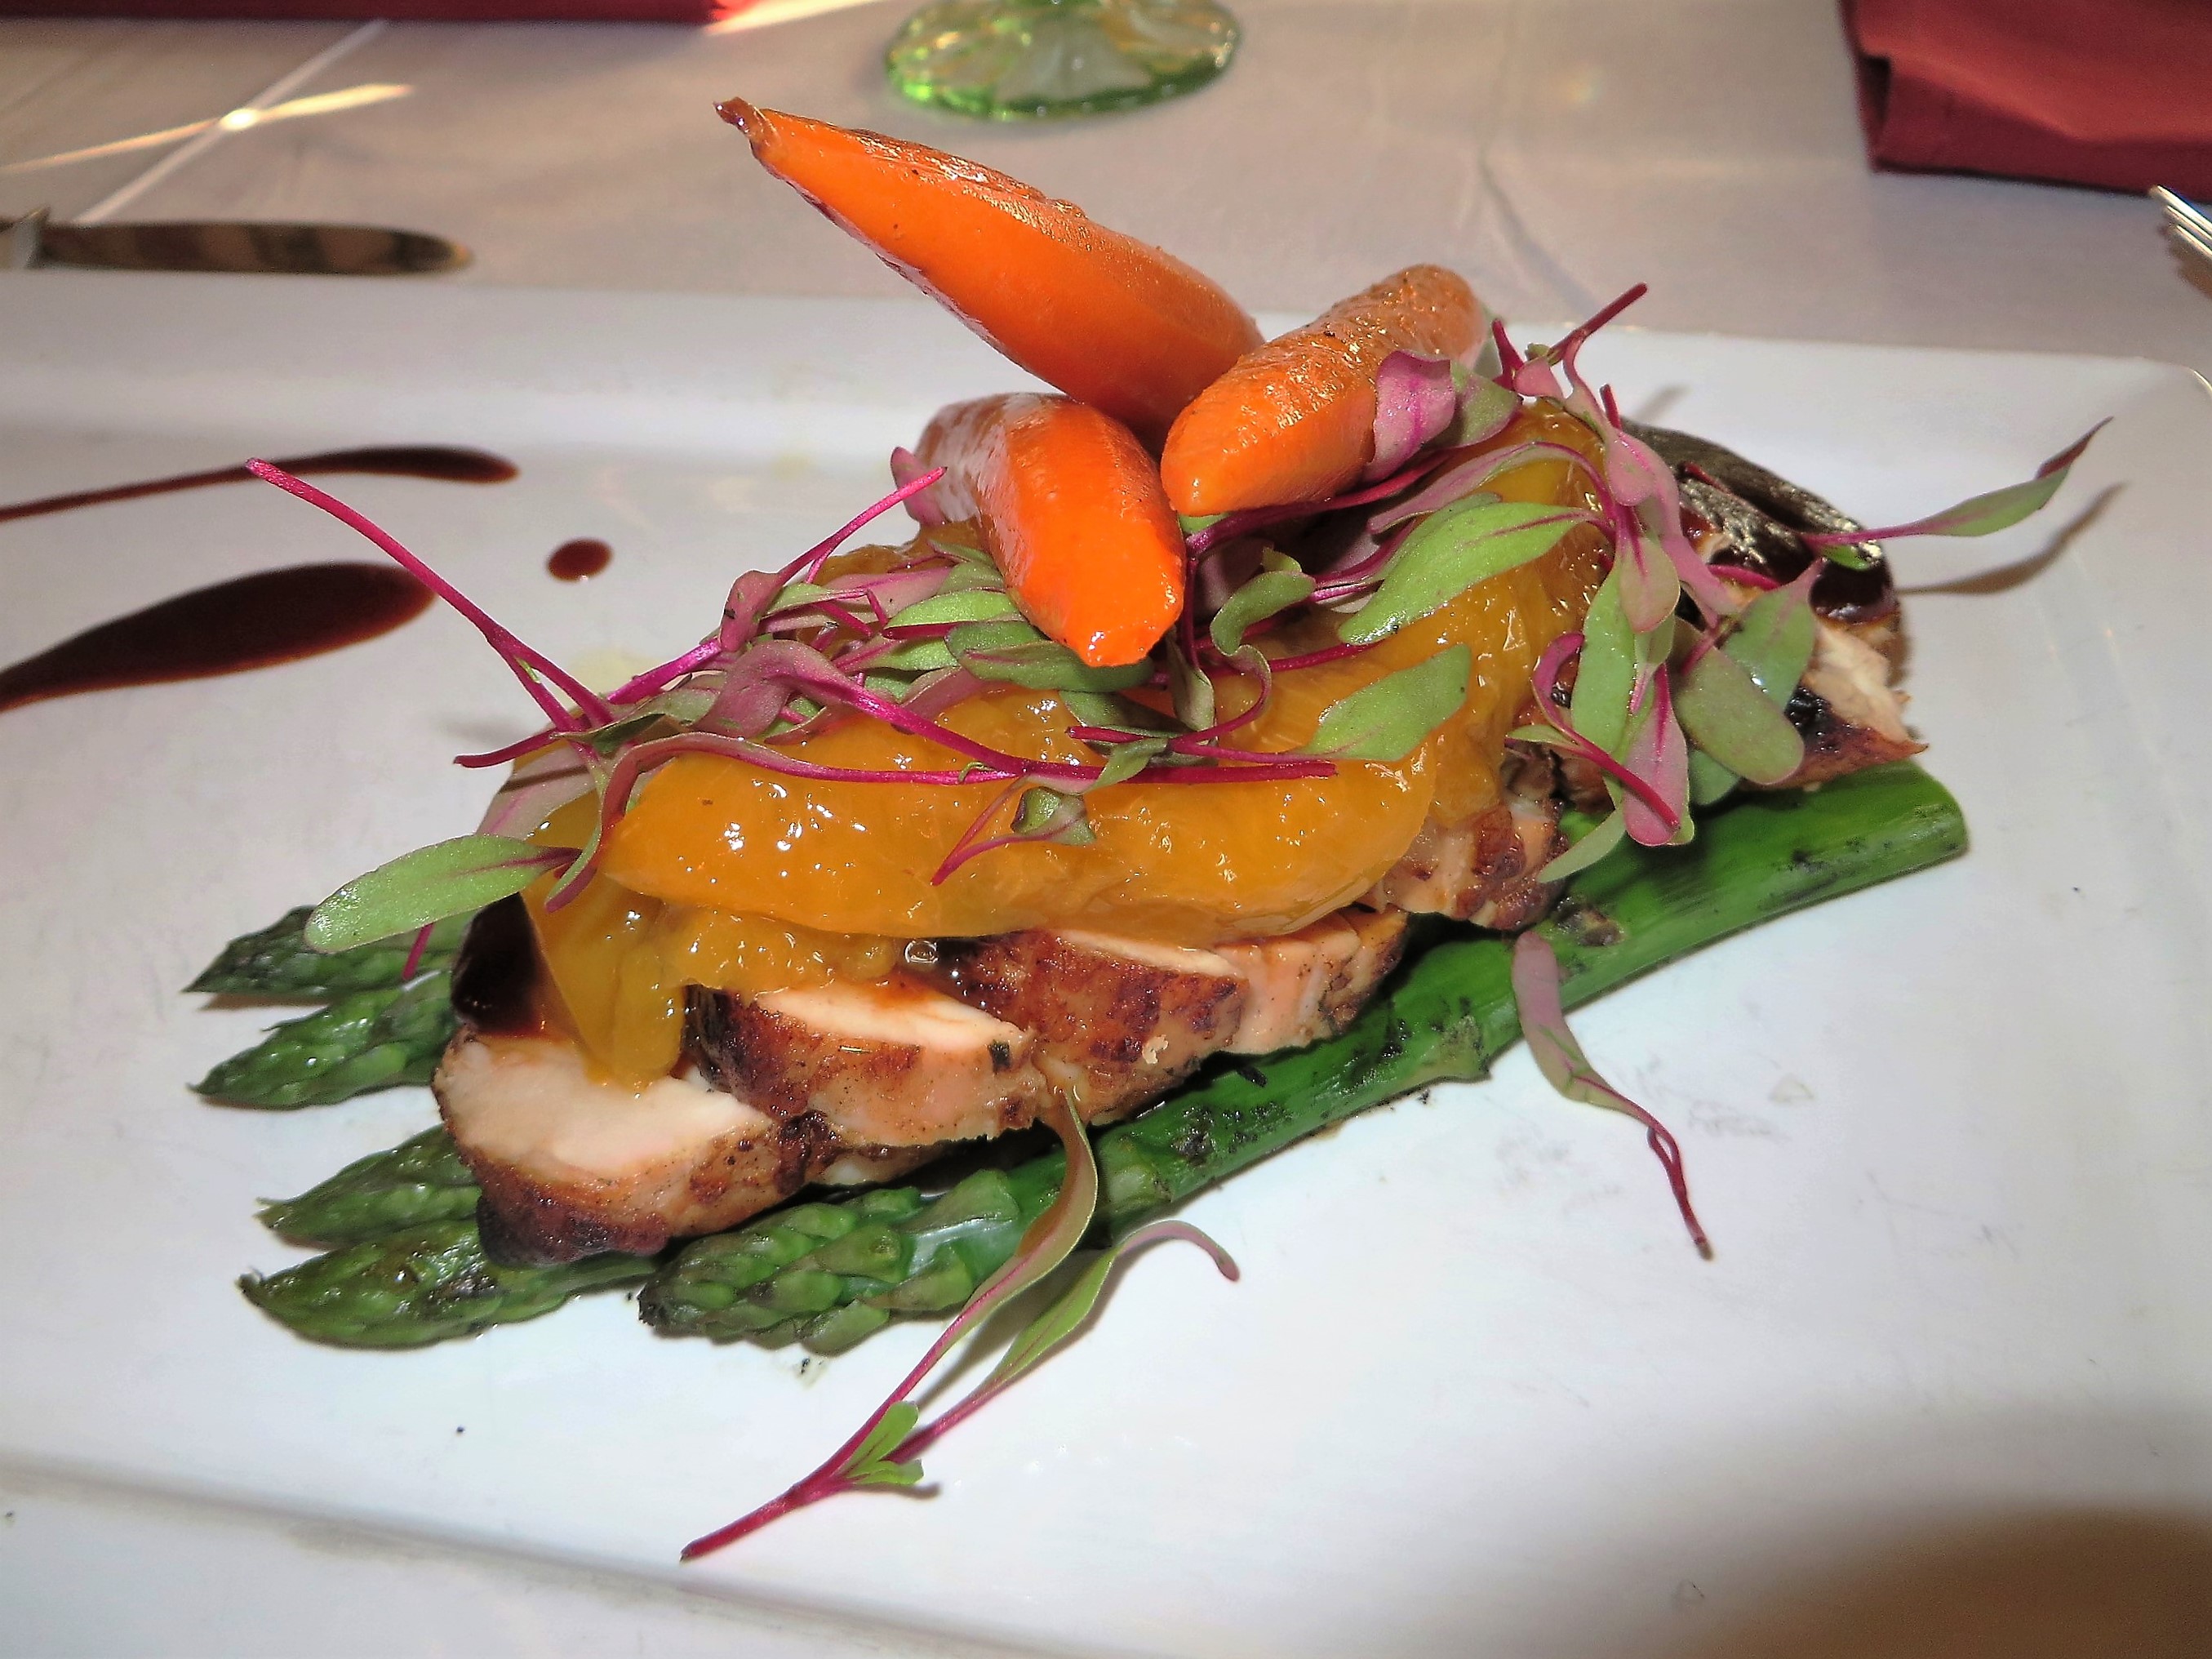 Gardens Restaurant - Pork Tenderloin with carrots, asparagus and peaches